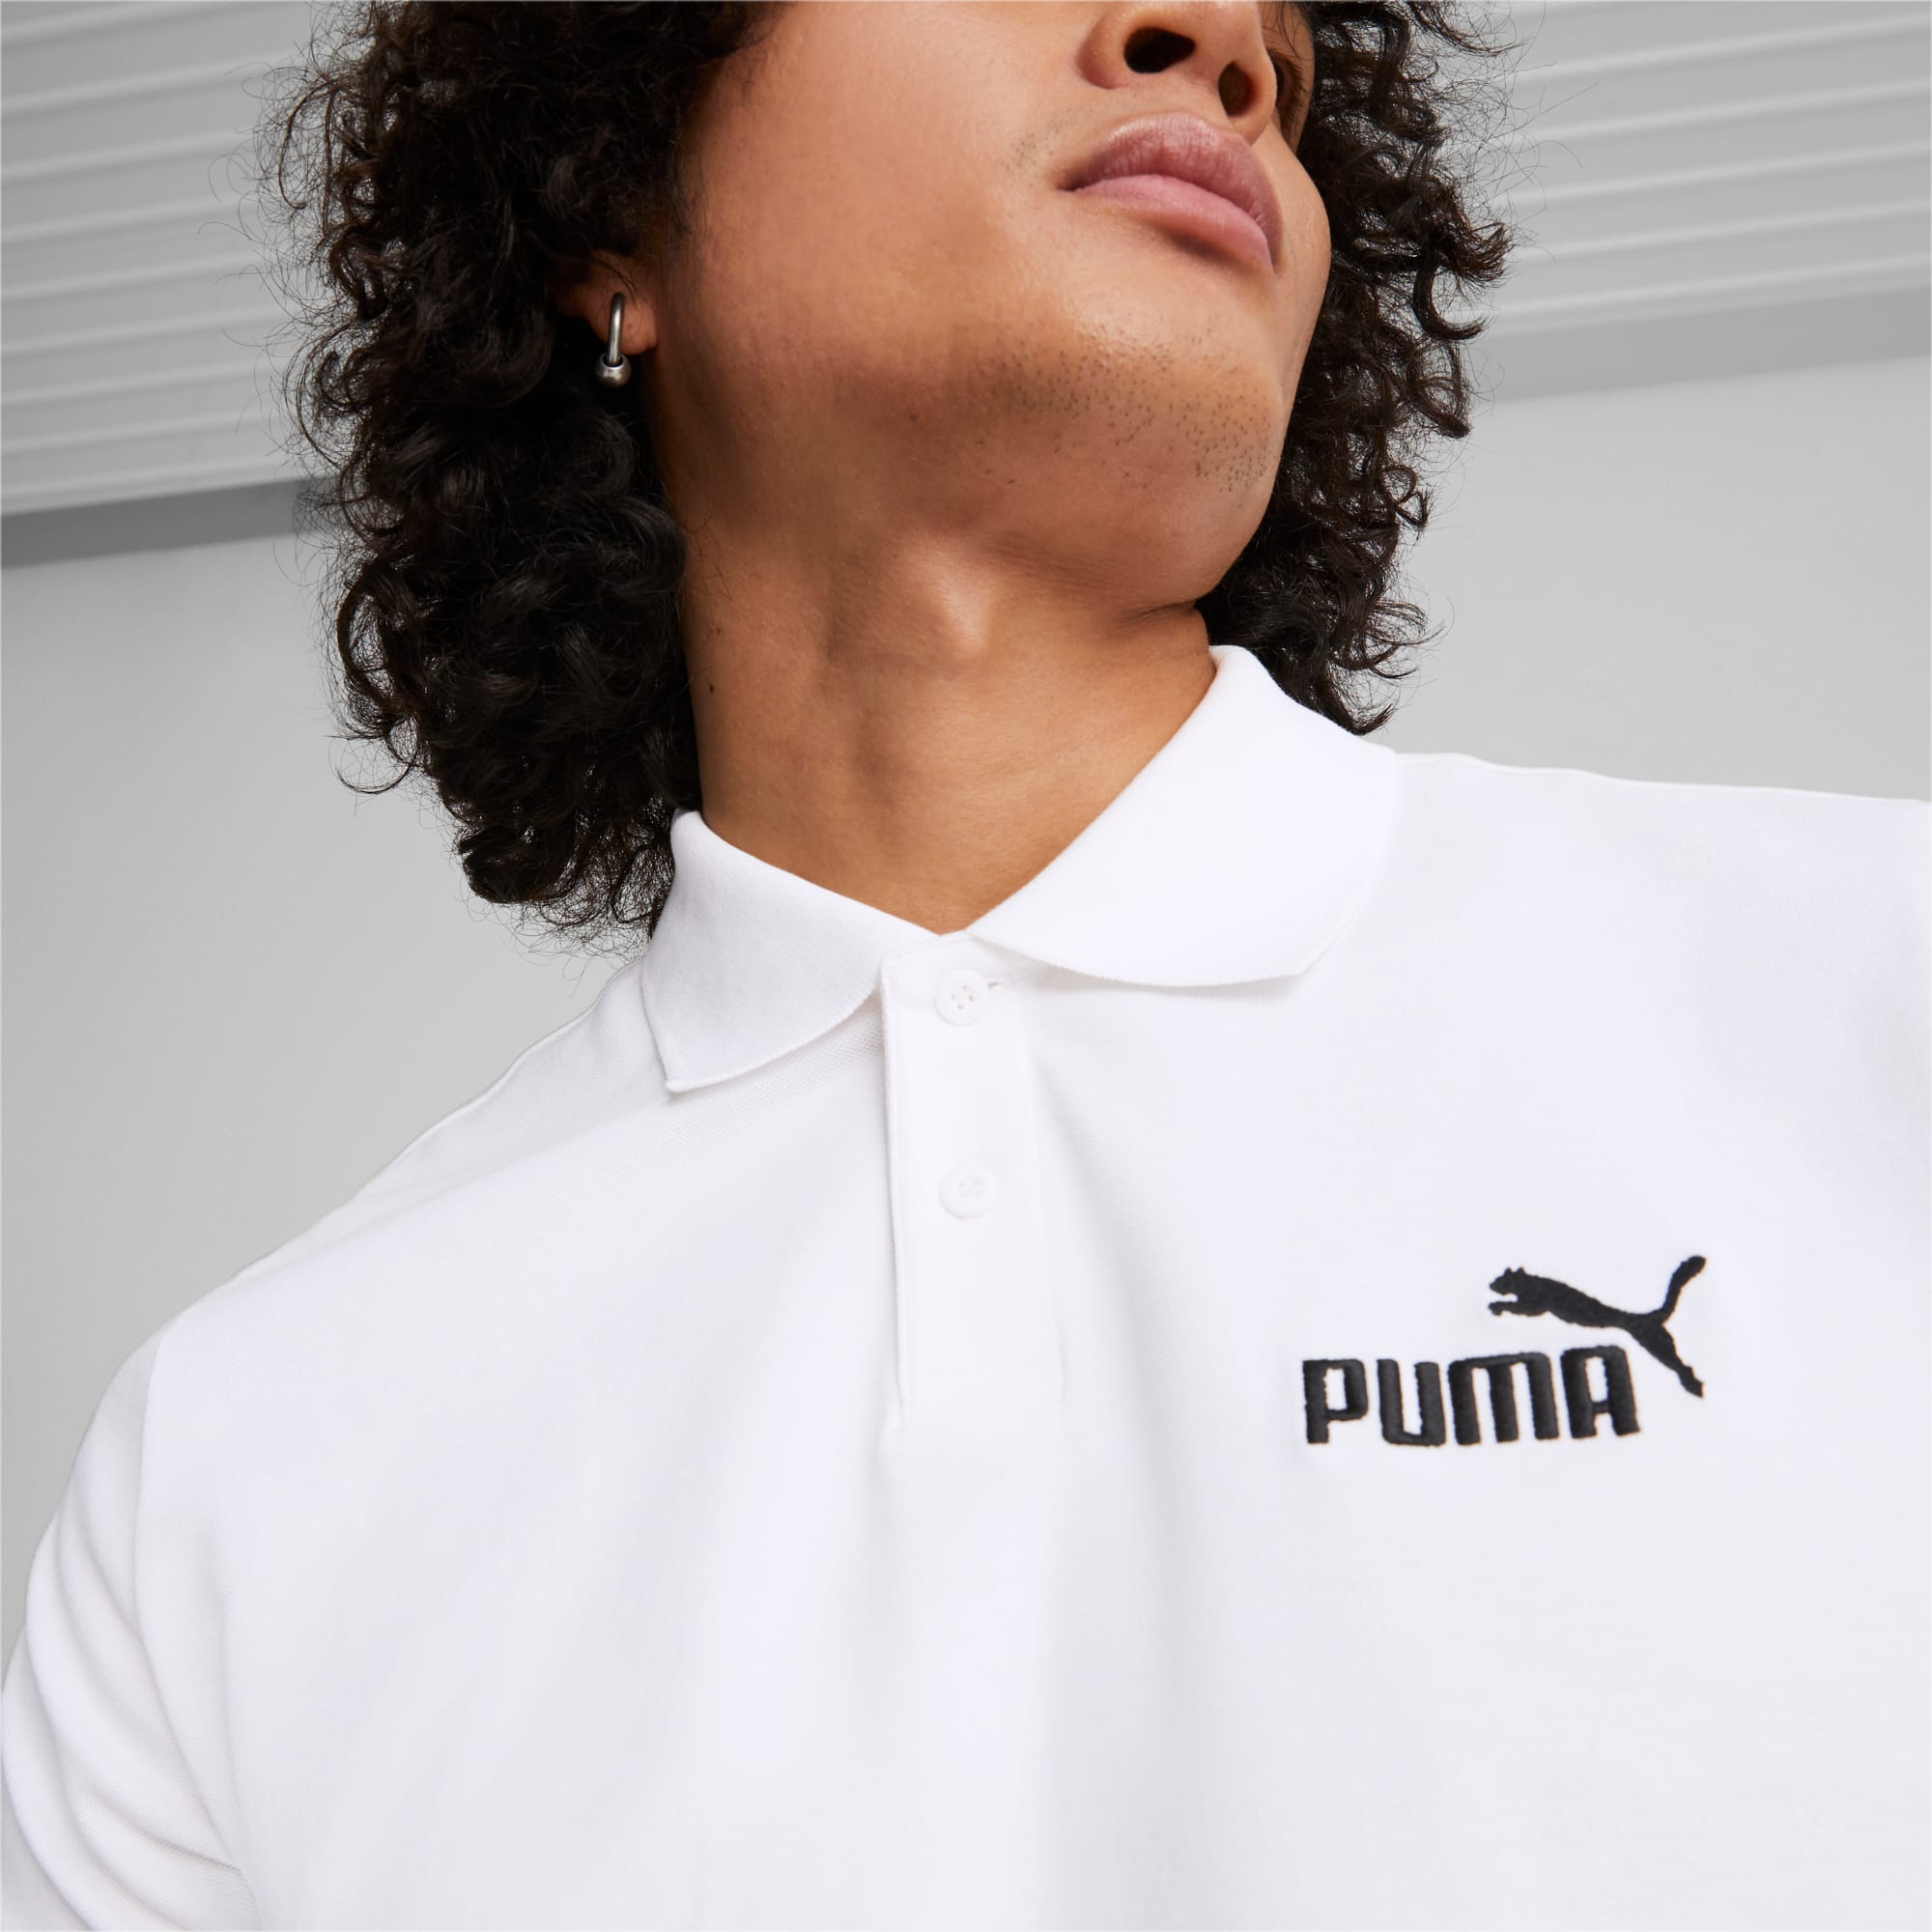 Essentials Pique Men's Polo Shirt | Puma White | PUMA Shop All Puma | PUMA